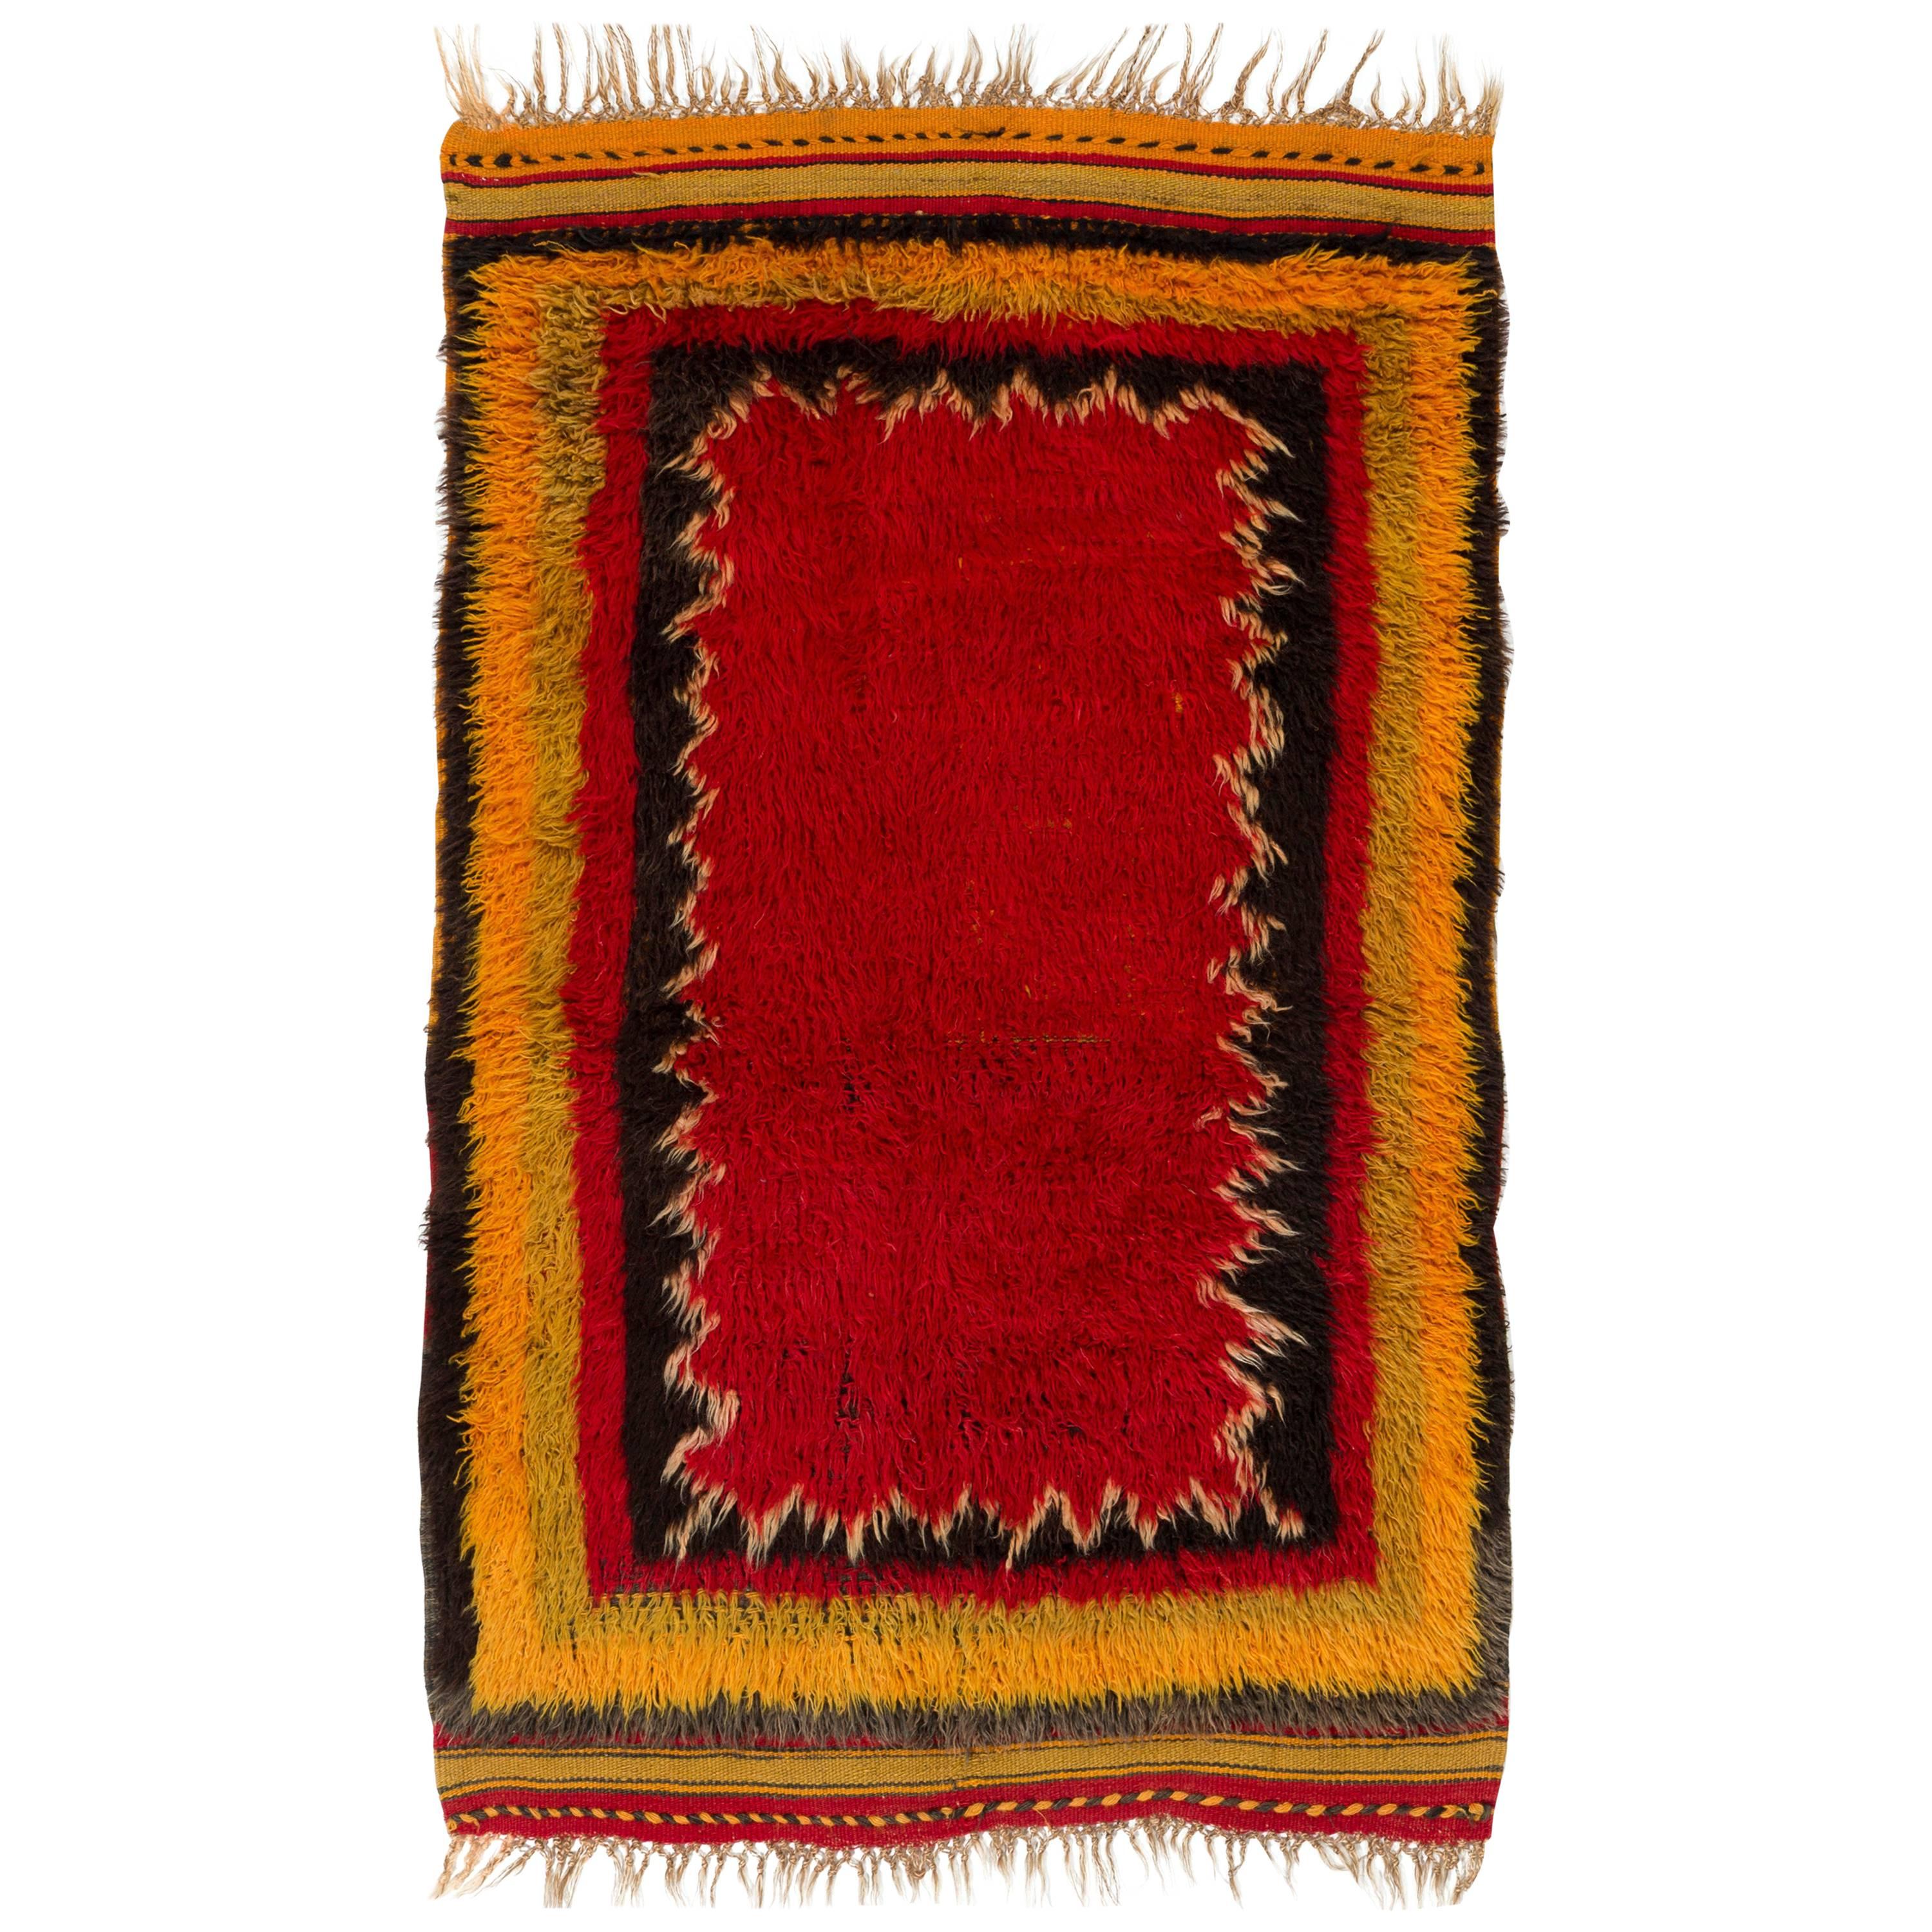 3.3x5.1 One of a Kind Midcentury Modern Tulu Rug. Wool Carpet, Floor Covering. 